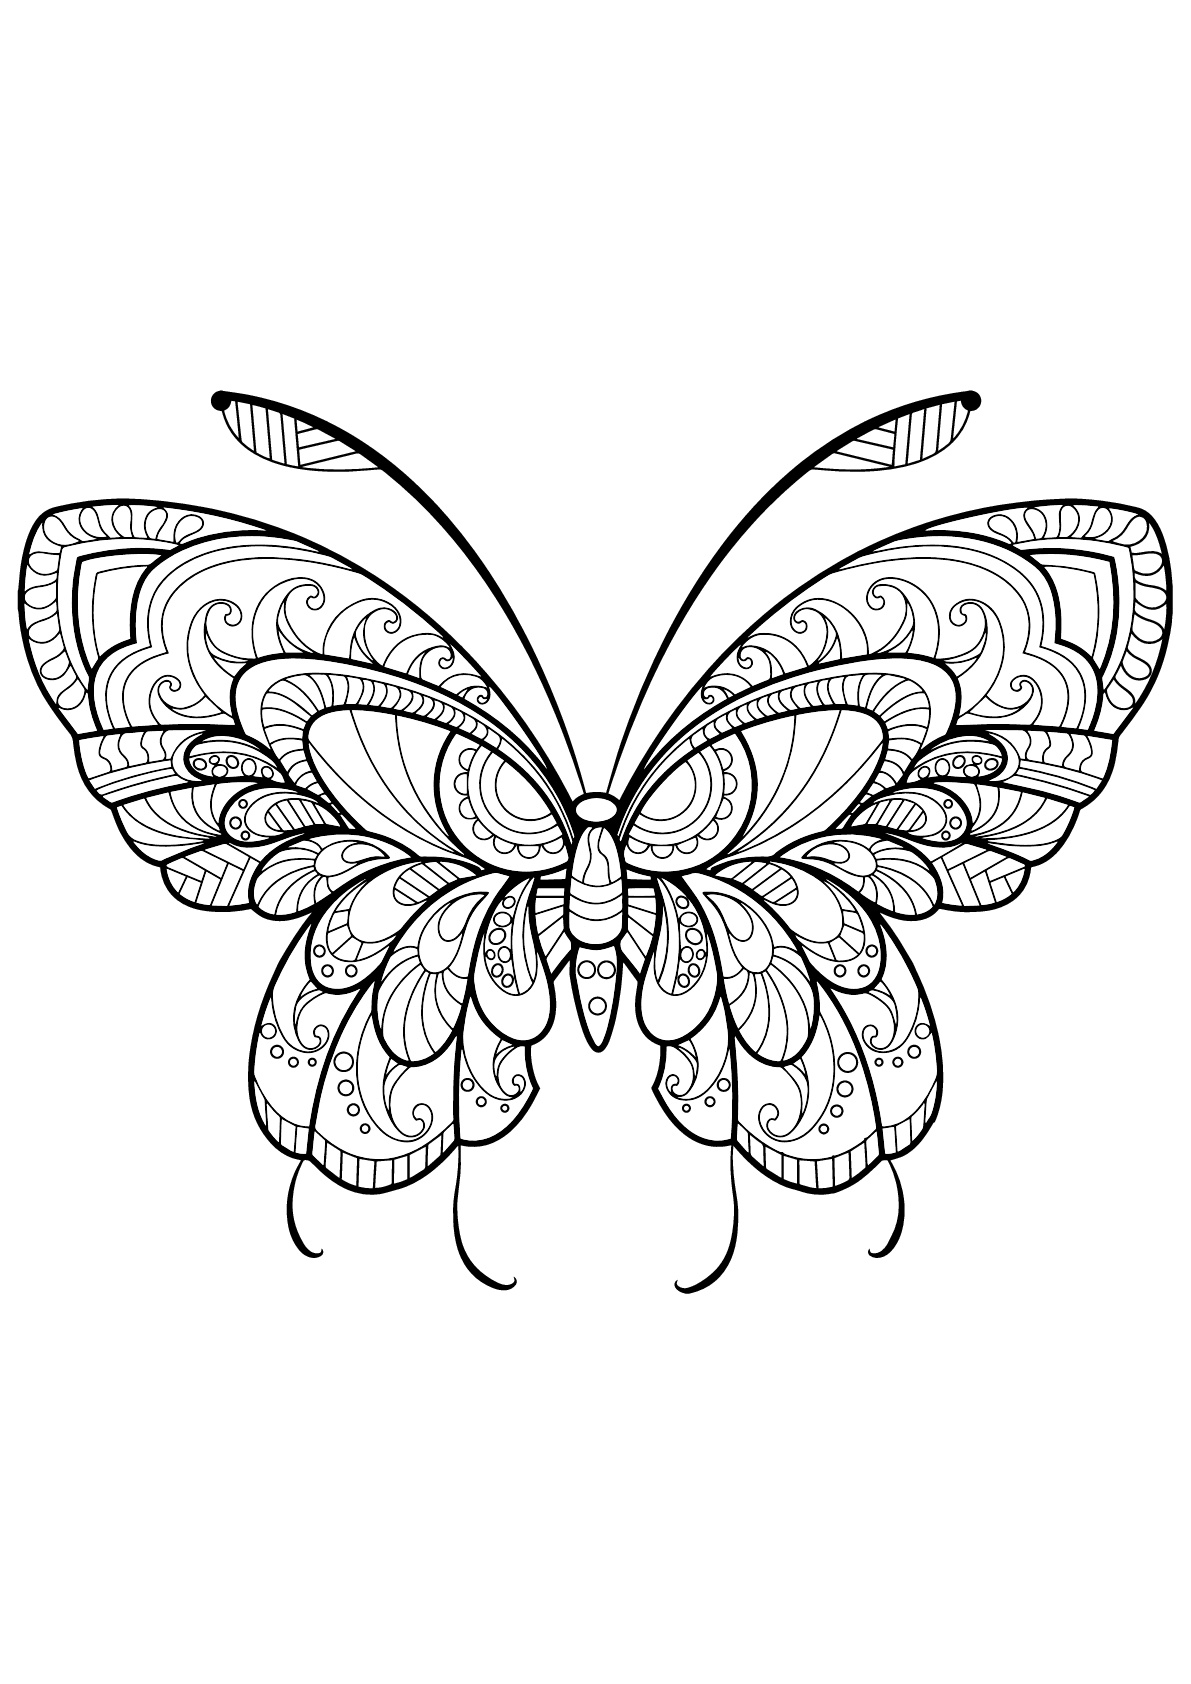 Mariposa con bellos e intrincados dibujos - 11